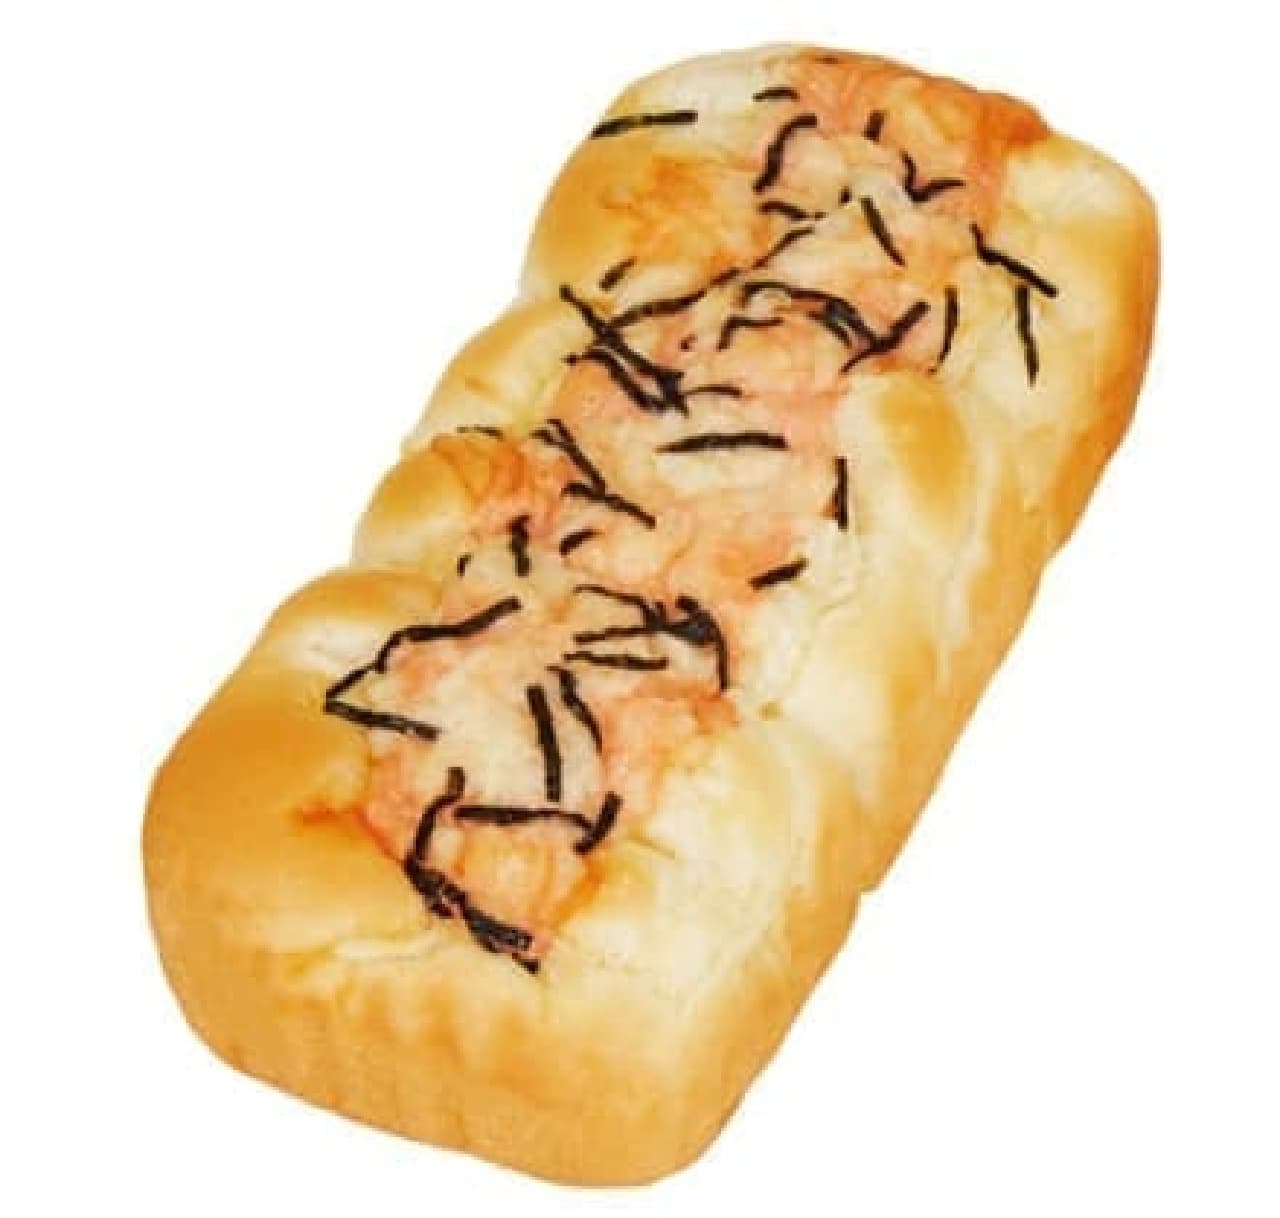 FamilyMart "Tearable Onion Bread (Mayonnaise)"